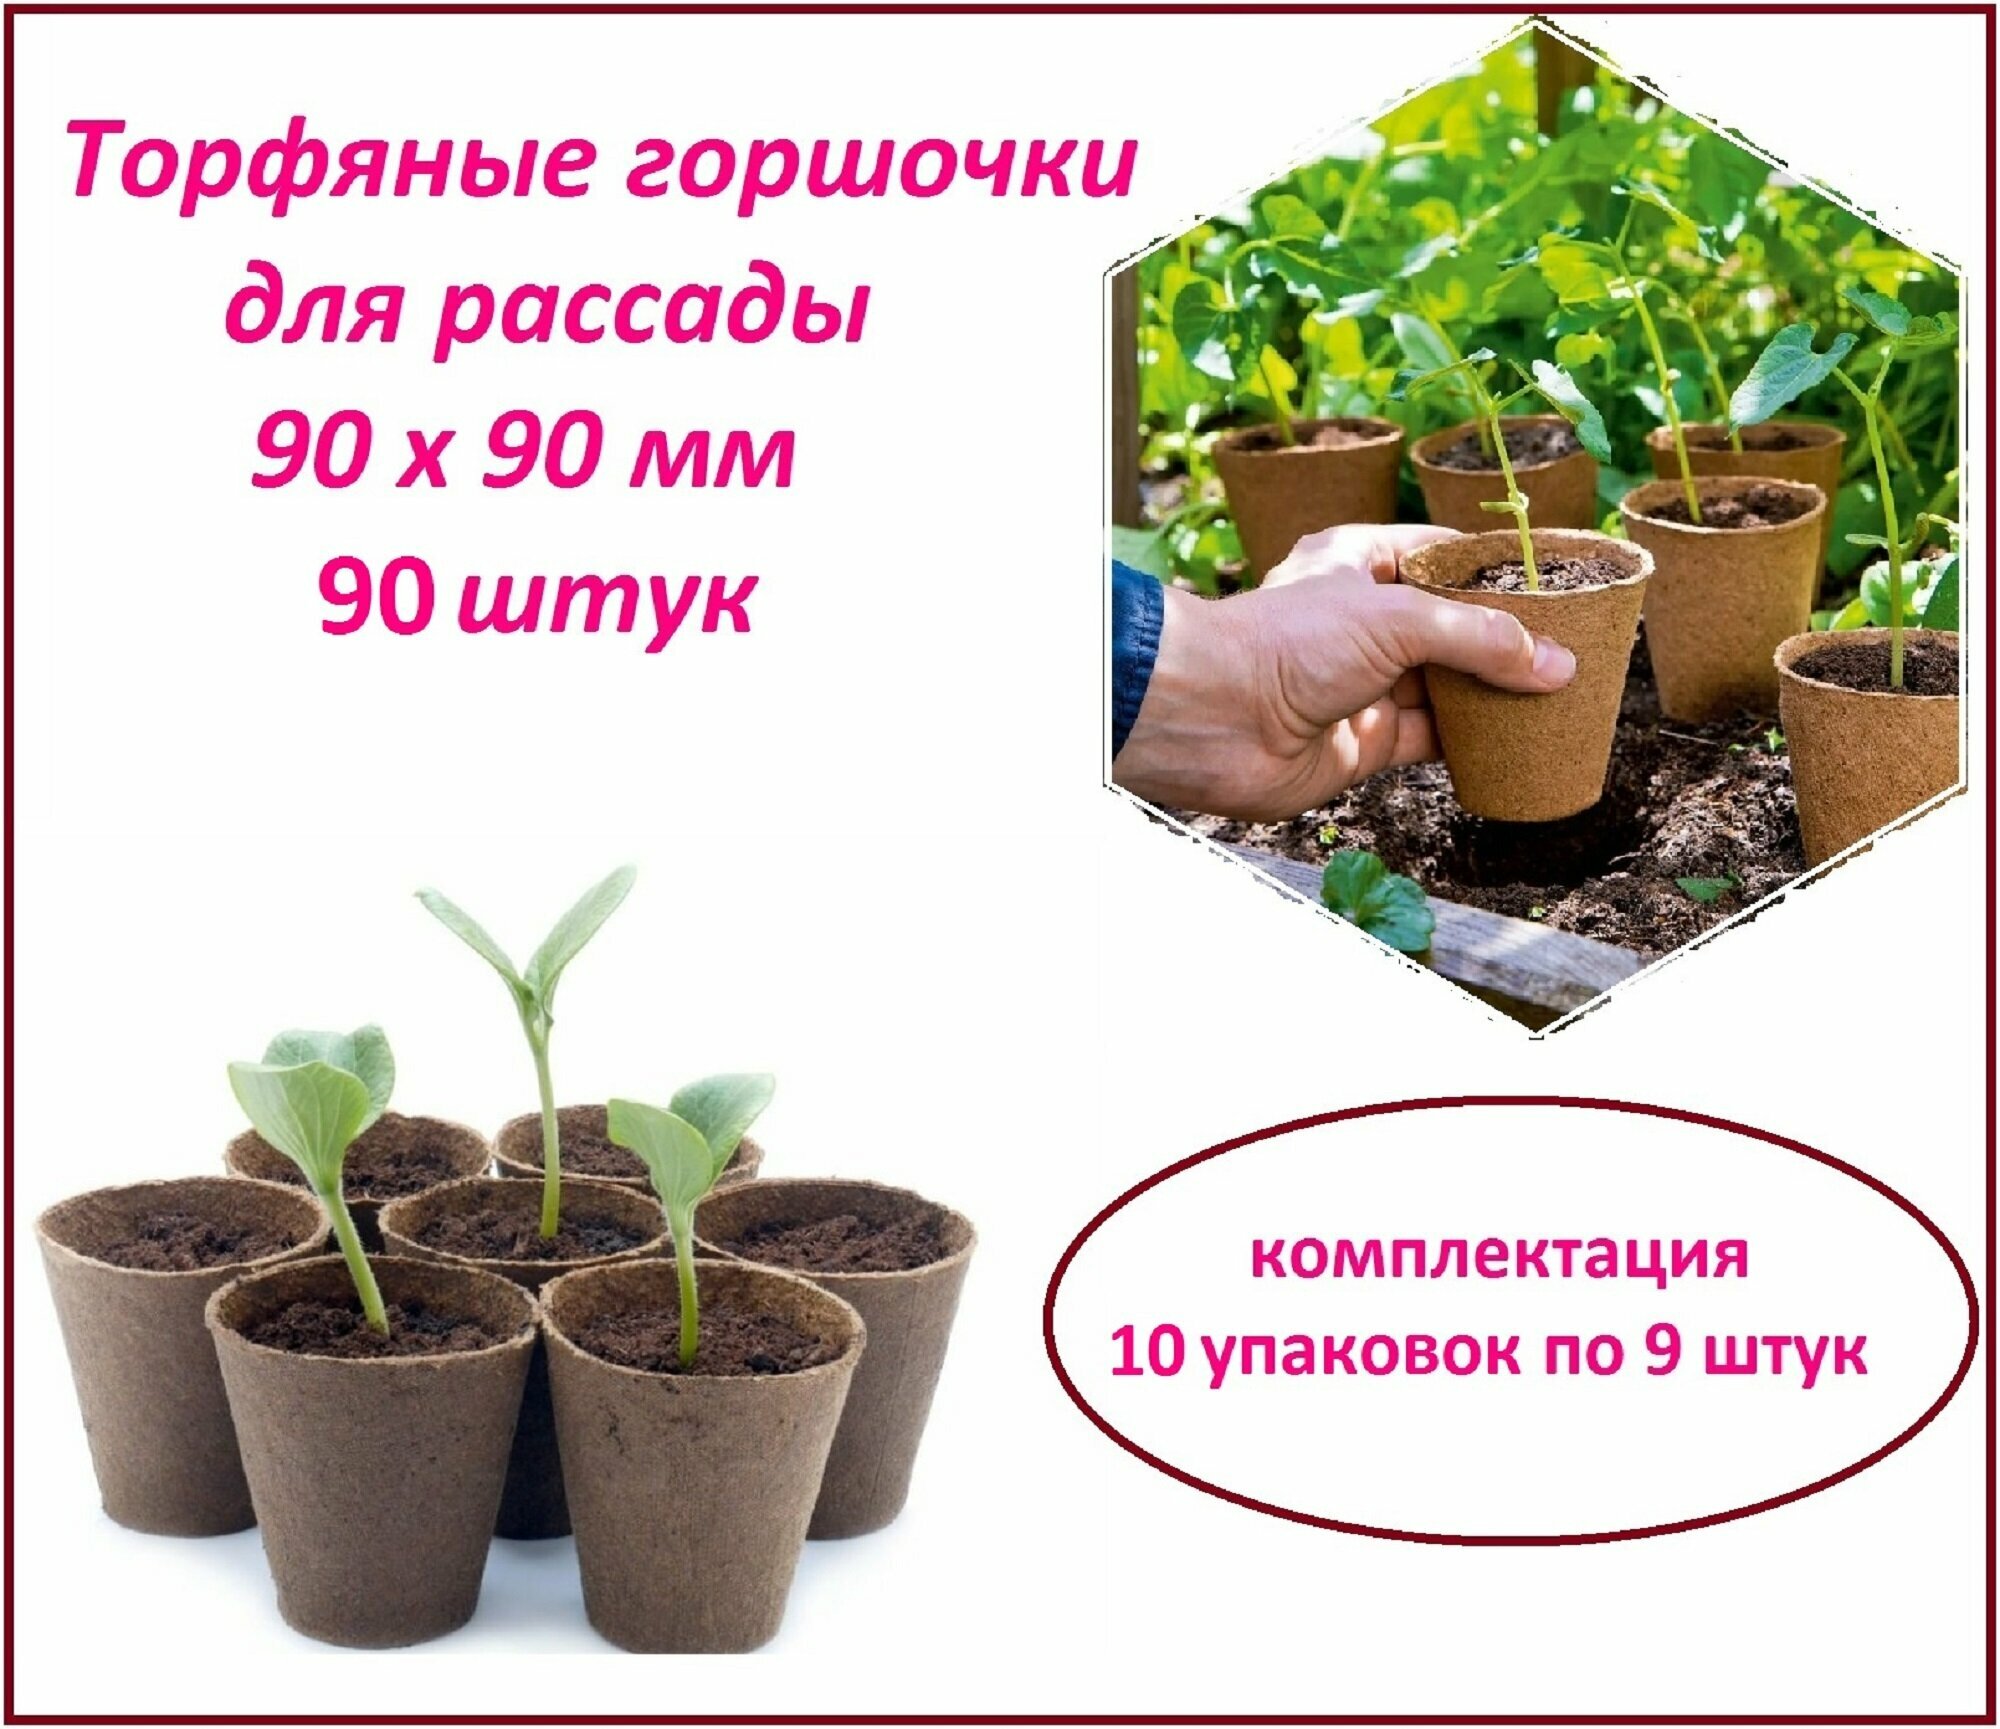 Торфяные горшочки для рассады, набор стаканчиков 90 штук, d 90 х h 90 мм, для выращивания рассады всех видов комнатных и садовых растений